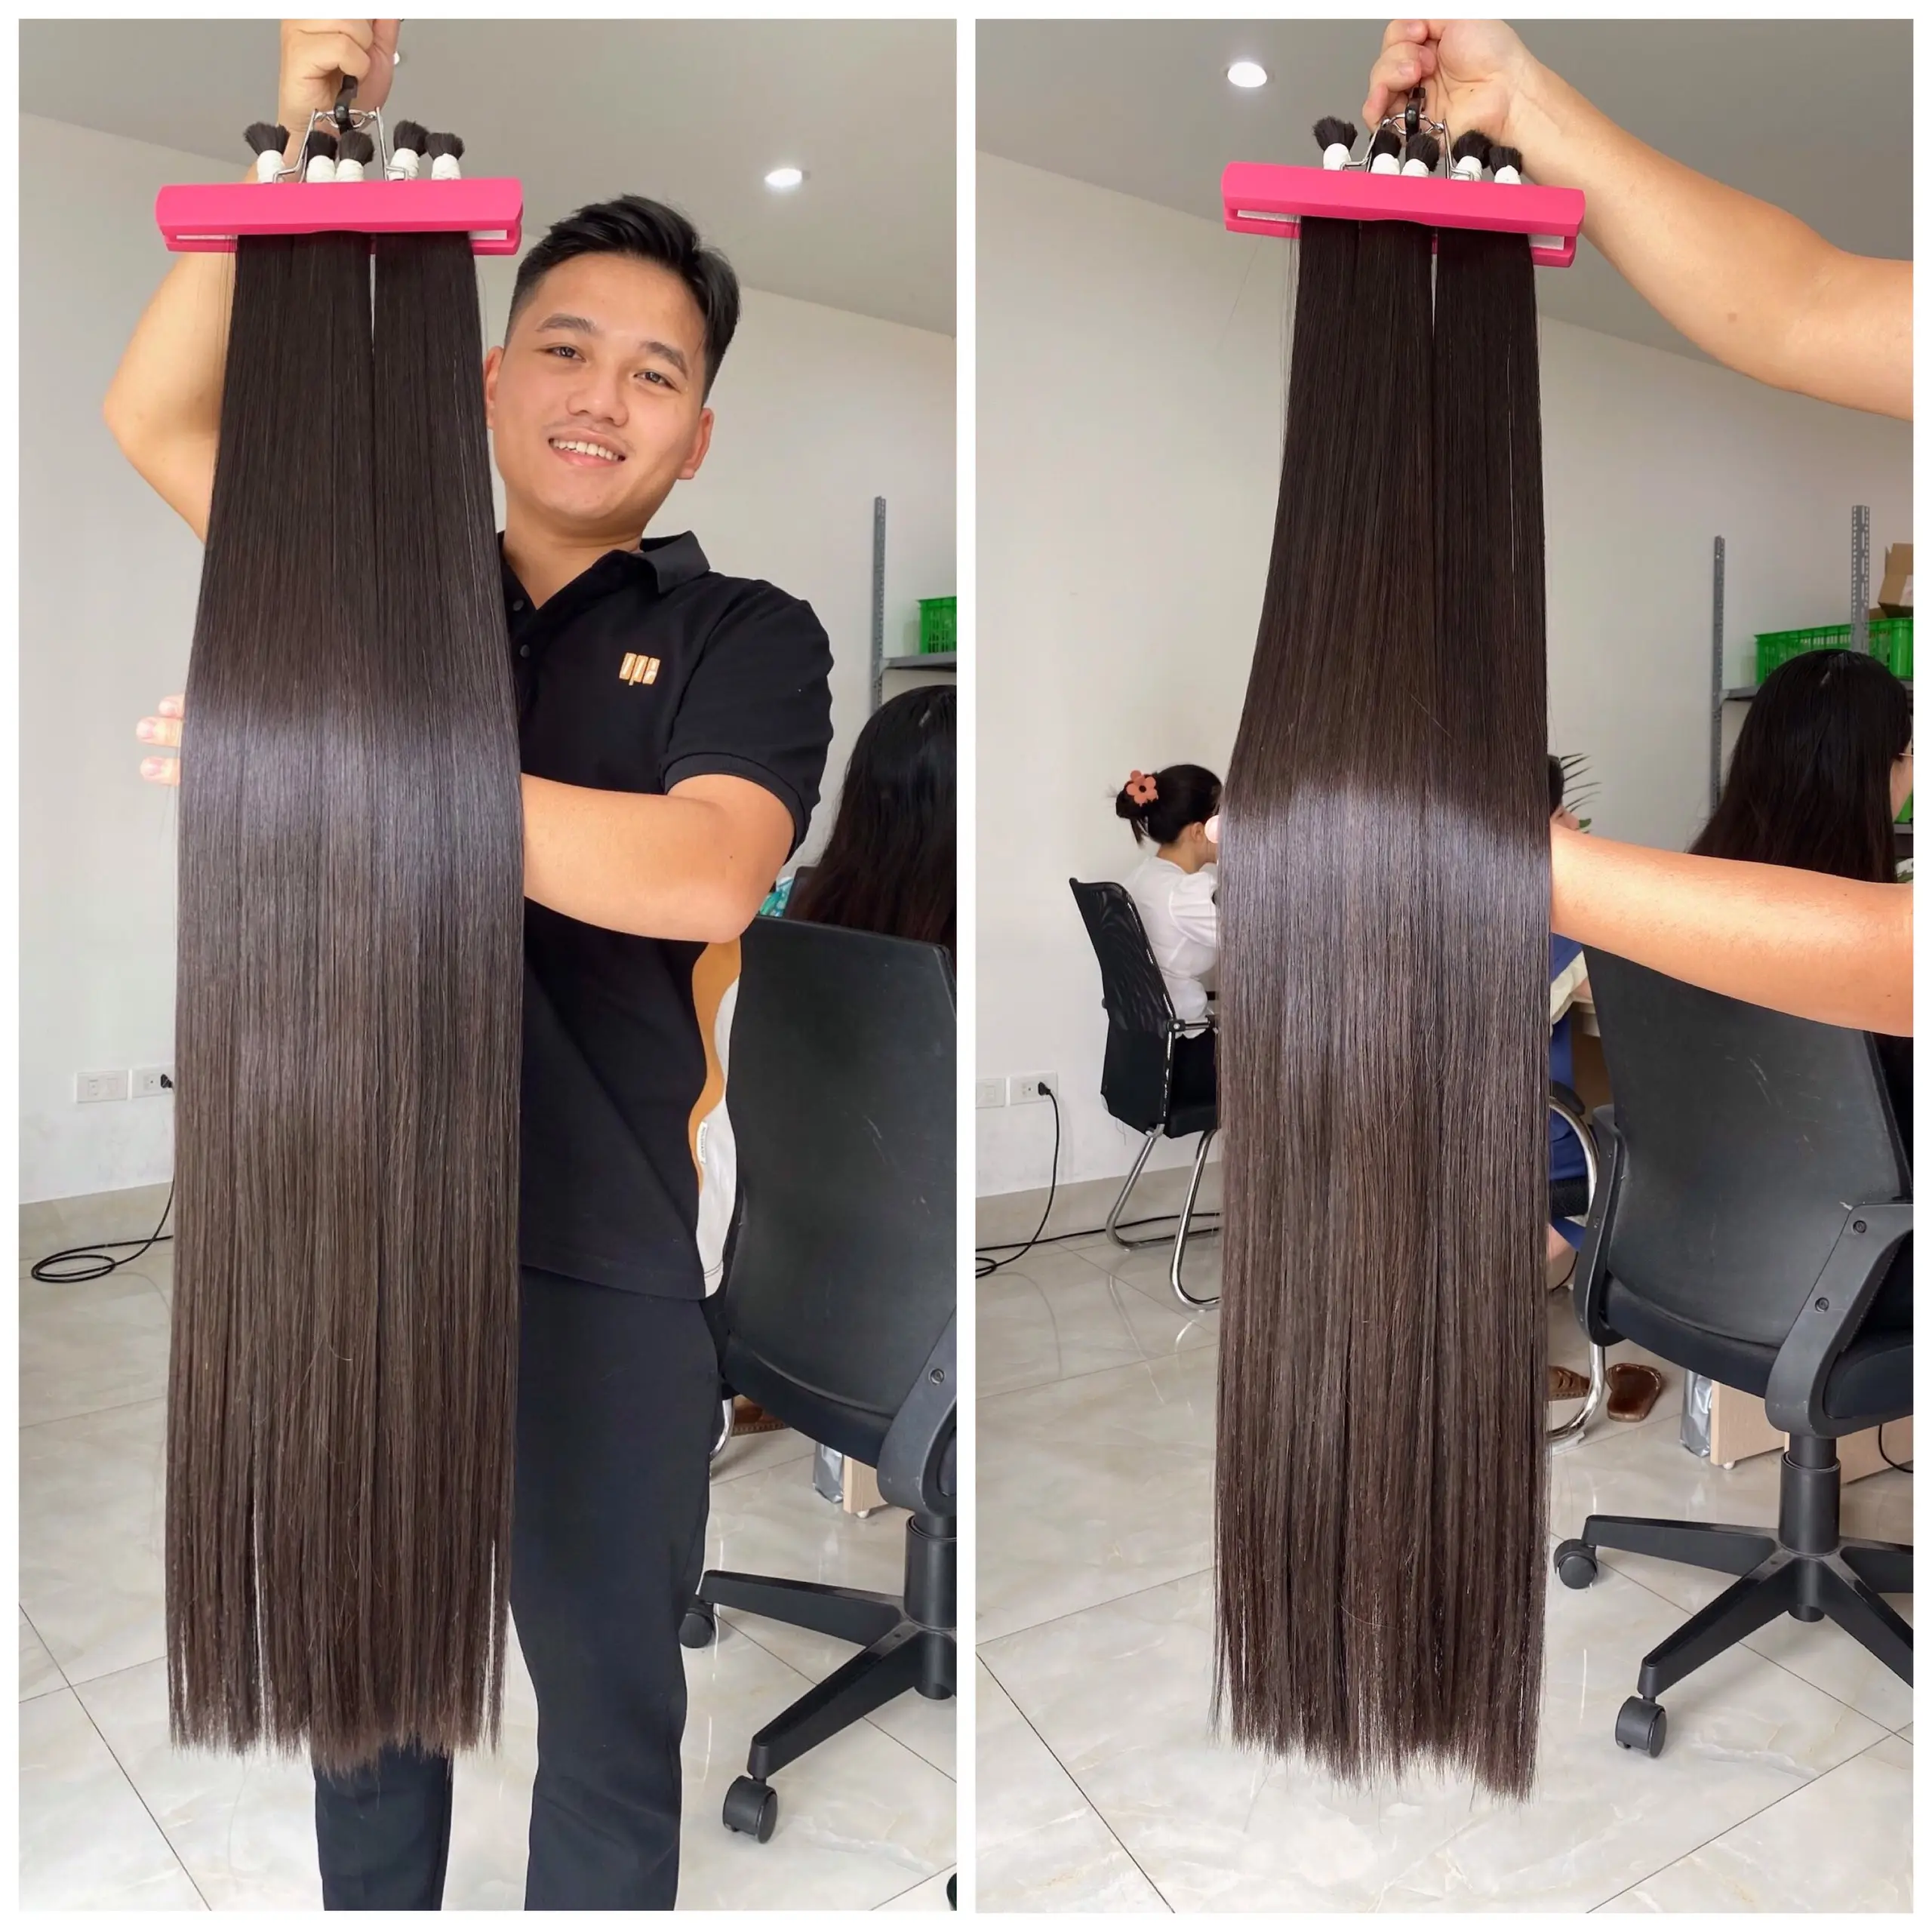 Bundel lurus tulang siap untuk dikirim pesanan besar dalam stok 100% rambut manusia Vietnam harga grosir